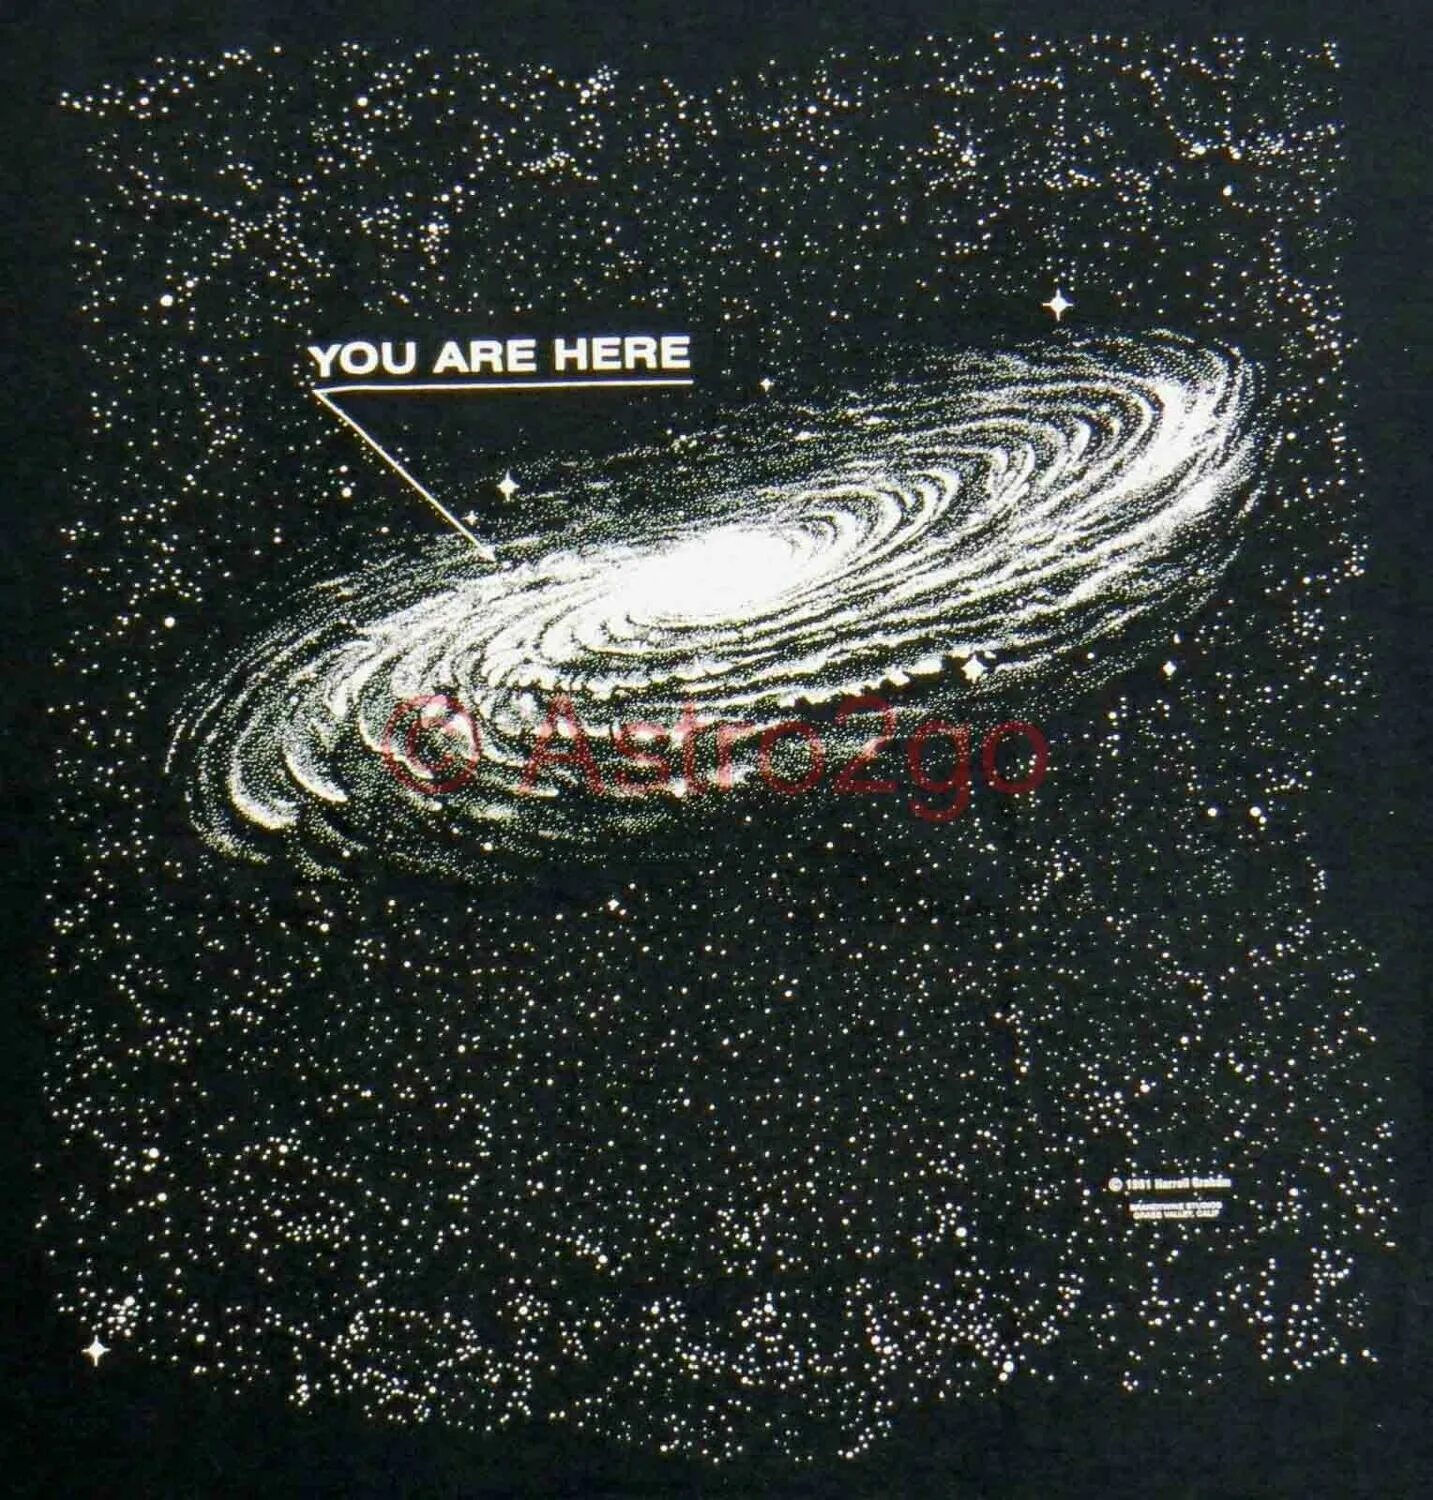 Space here. You are here Вселенная. You are here Млечный путь. Млечный путь Галактика хорошего качества с рукавами. You are here Milky way.